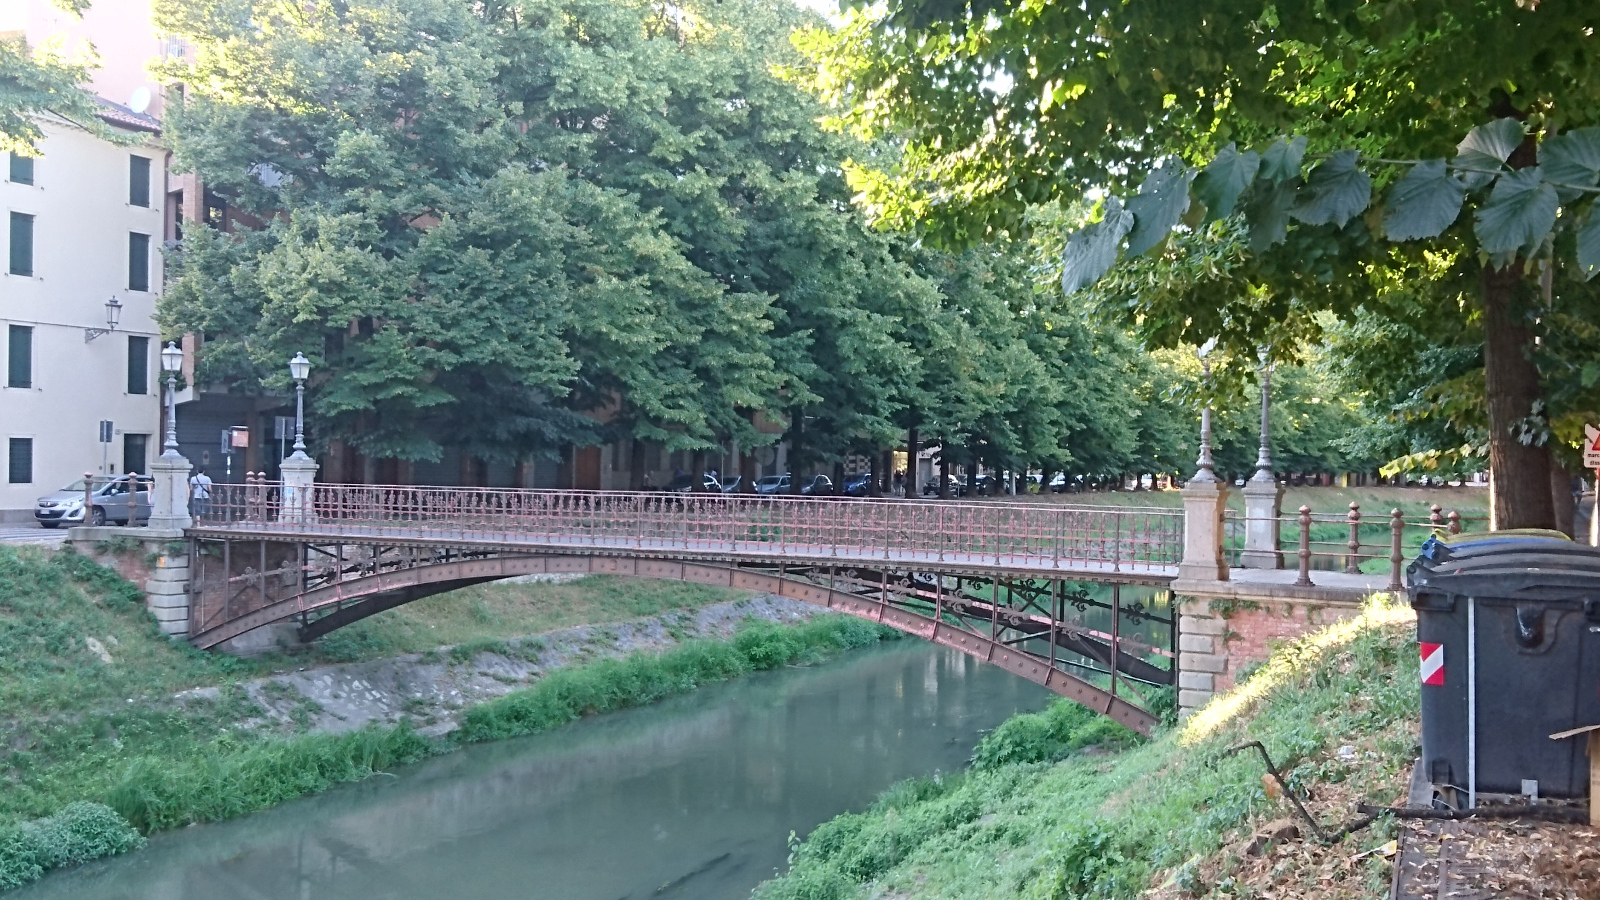 Passerella di S. Benedetto (Ponte di ferro)